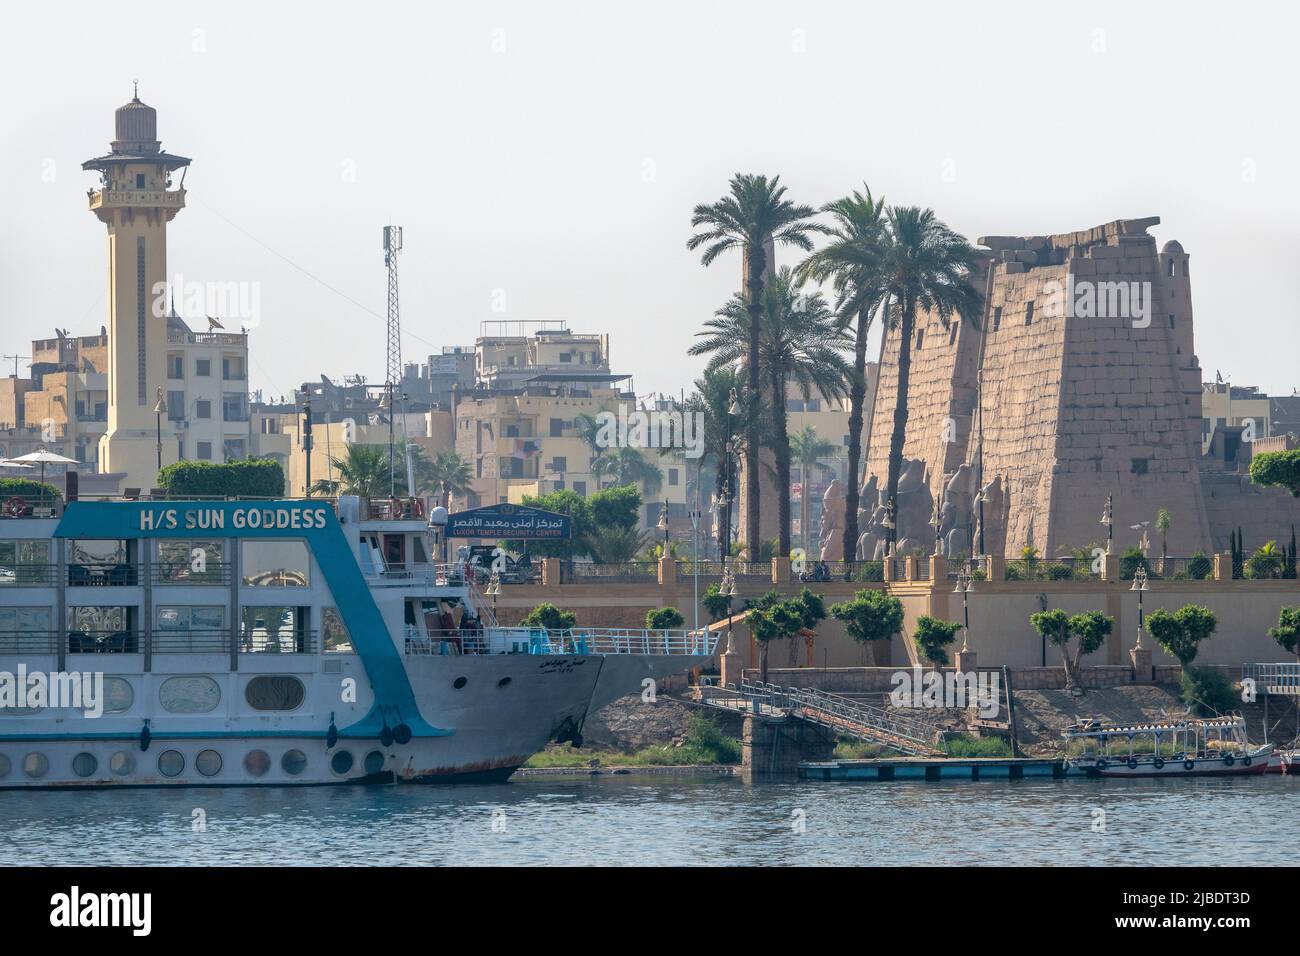 Vista del Templo de Luxor, y la Corniche de Luxor, tomada del Río Nilo Foto de stock